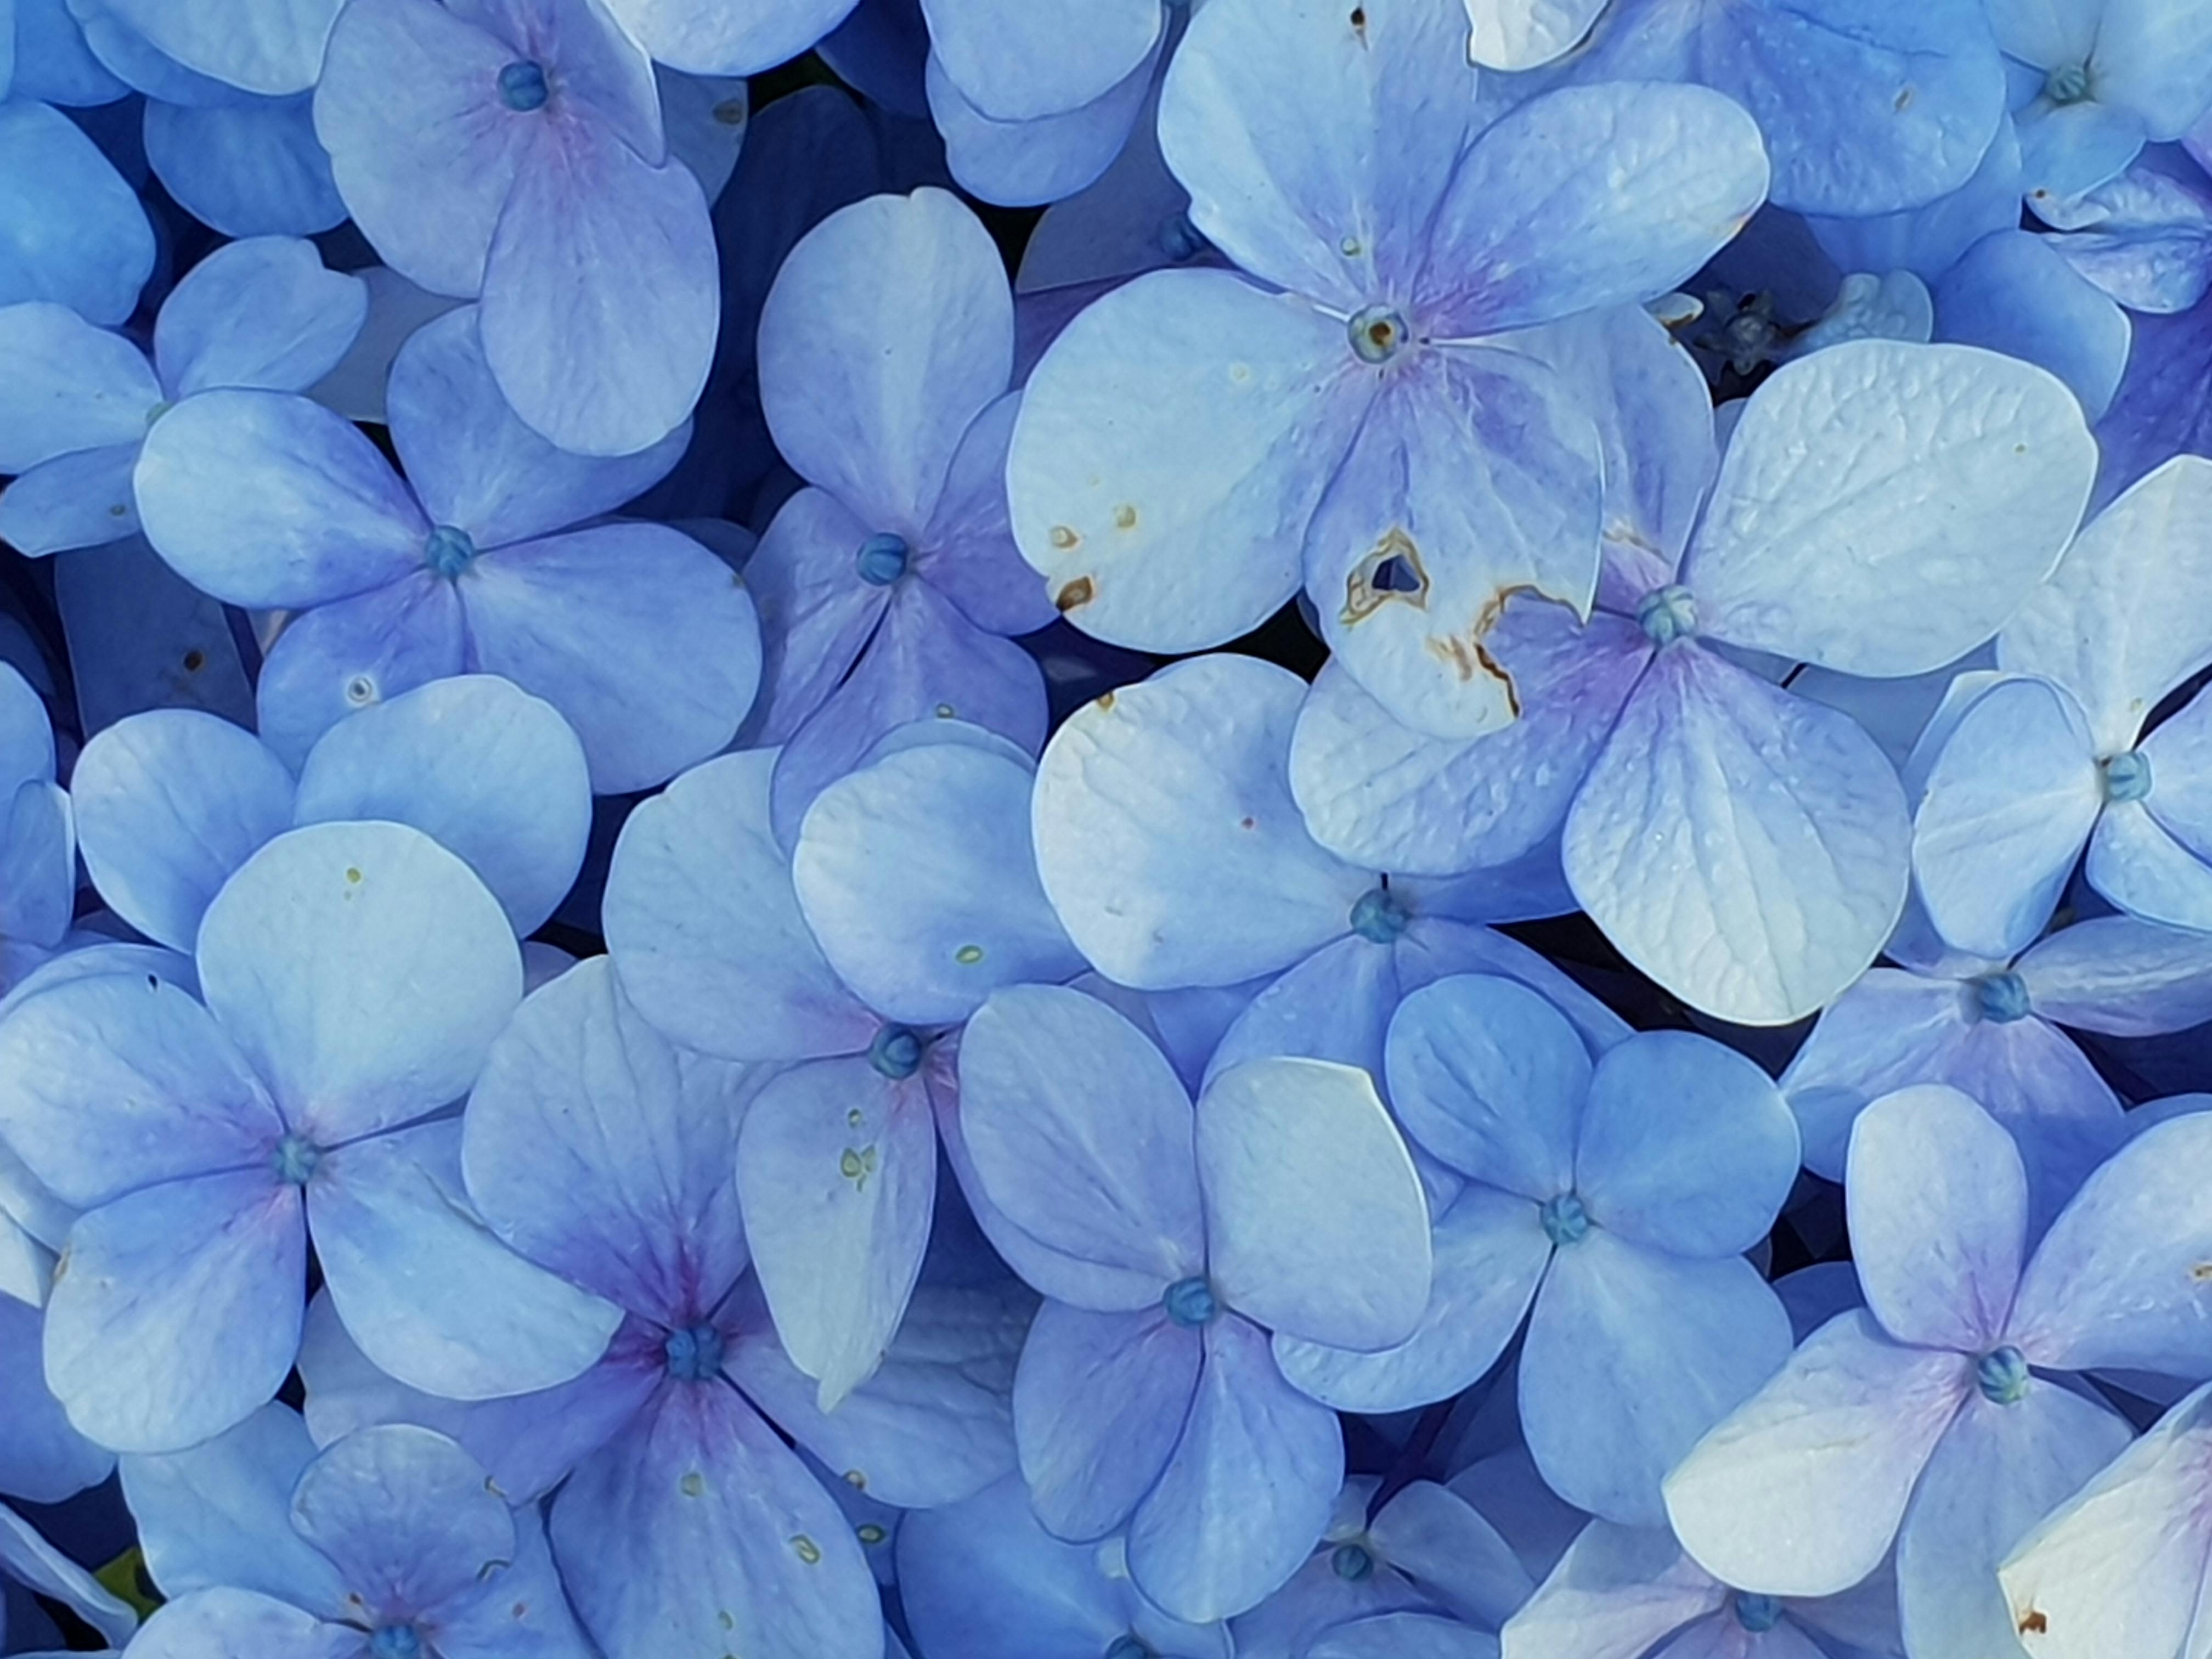 Light Blue Flower Pictures  Download Free Images on Unsplash